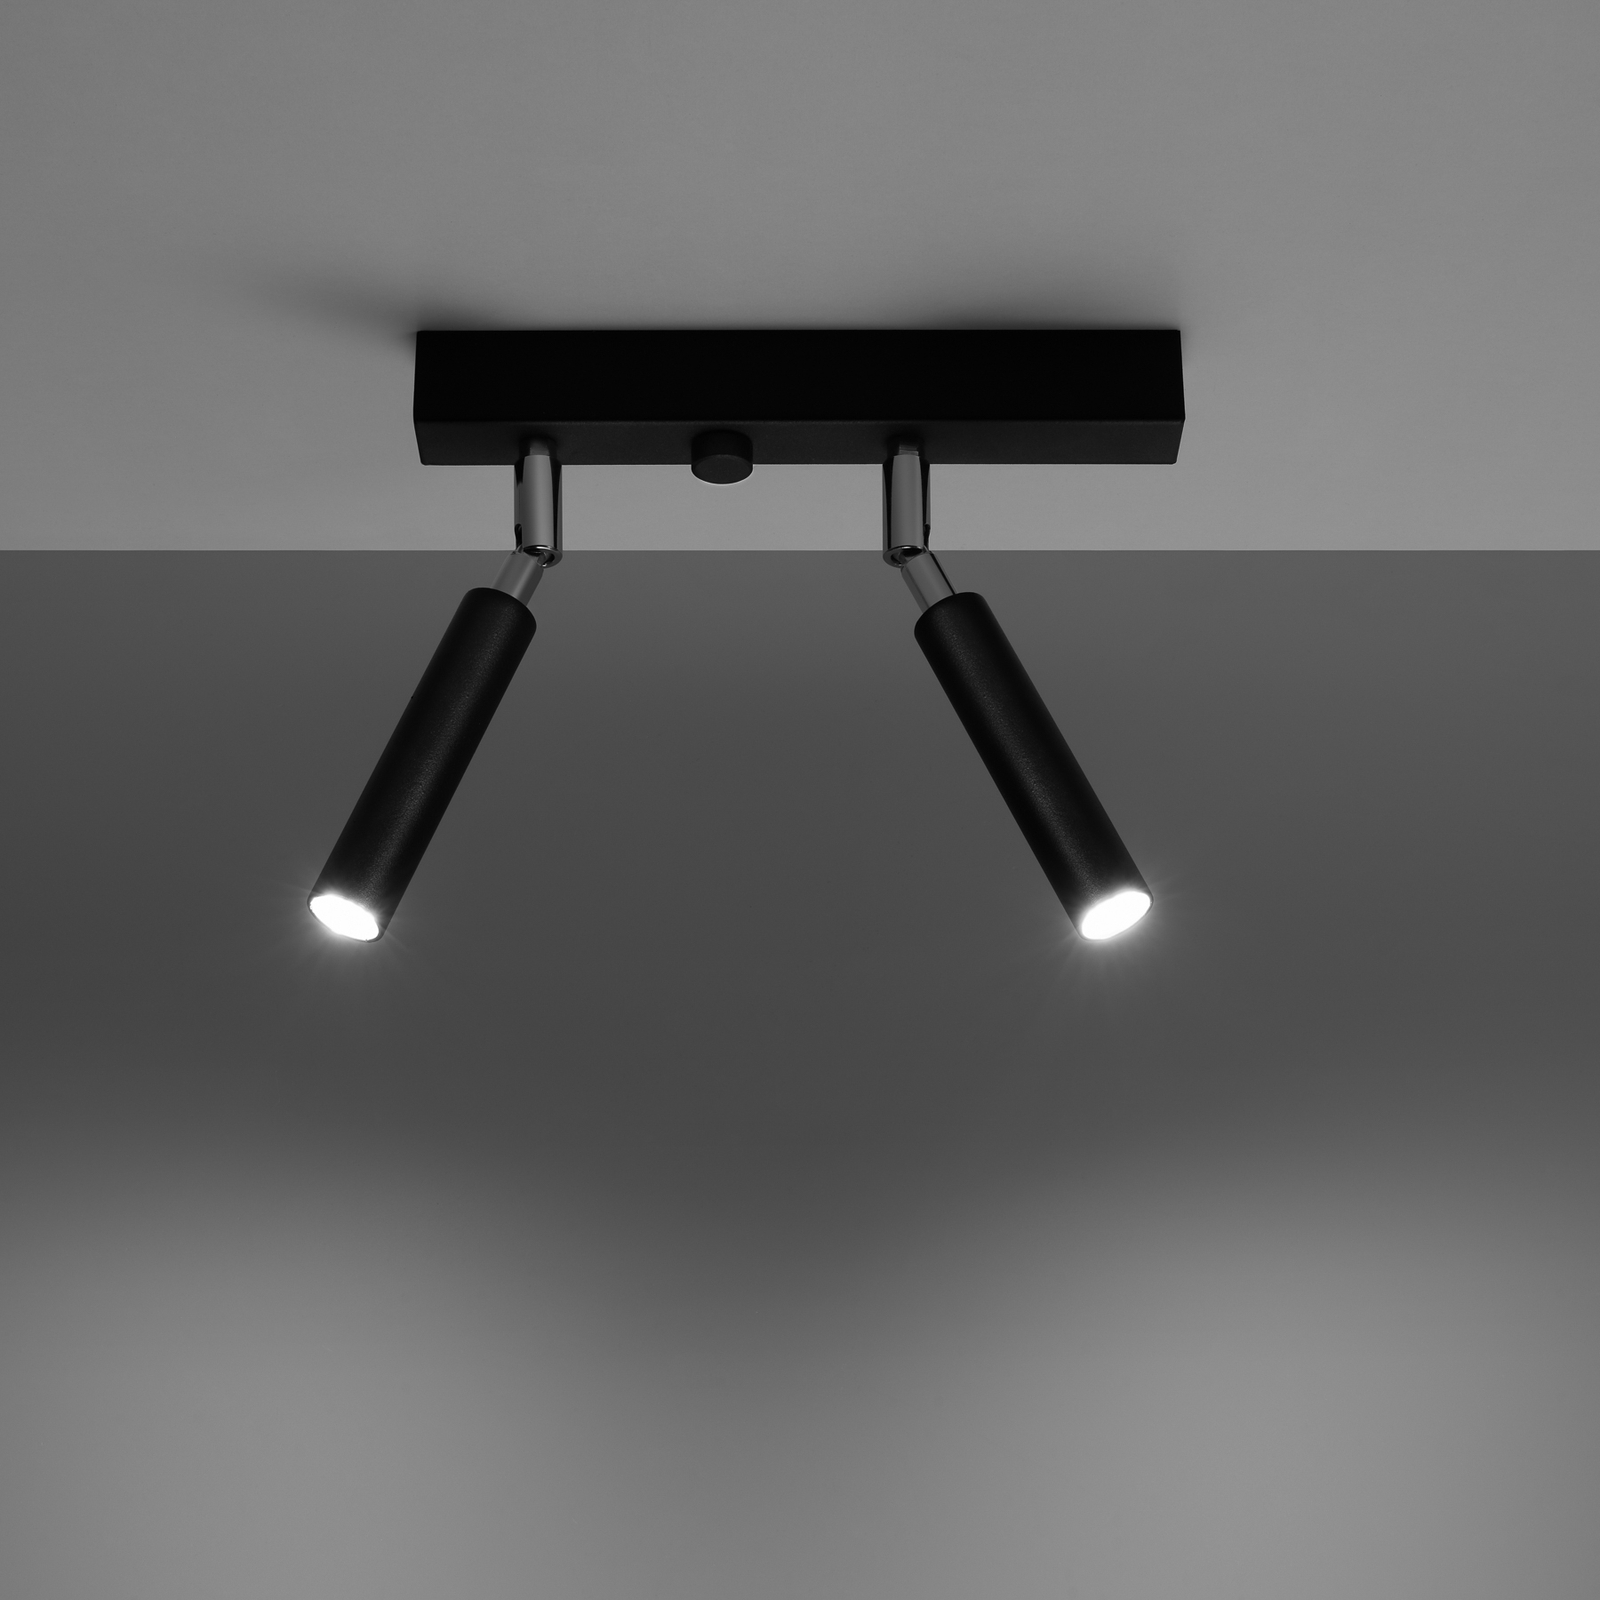 Euluna Nicanor spot plafond noir/chromé à 2 lampes